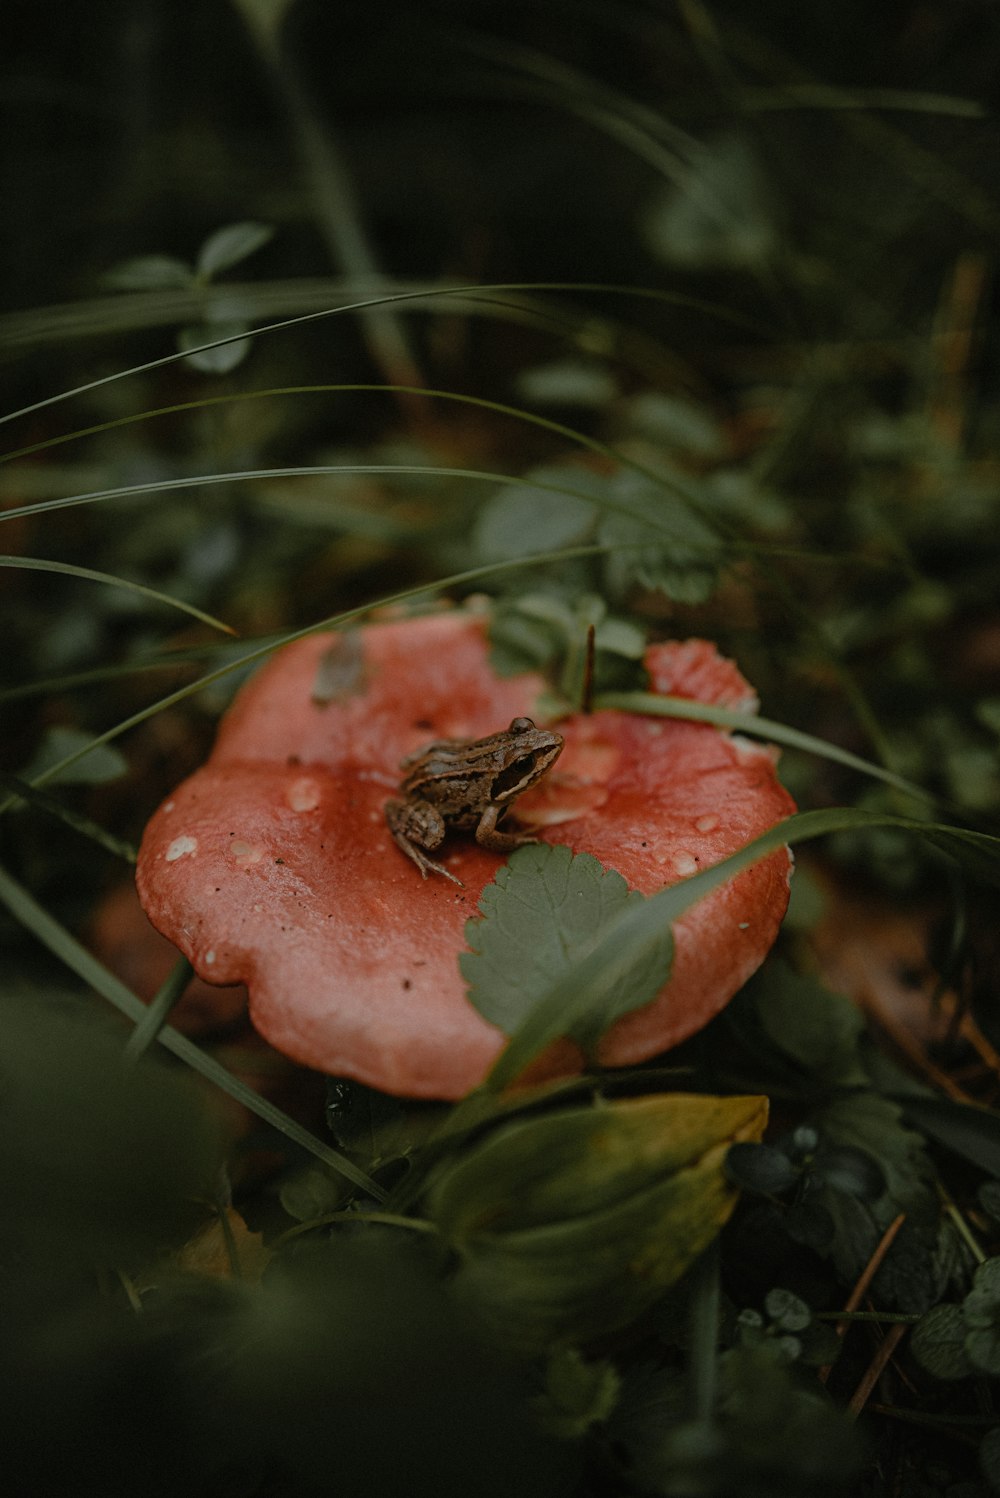 Ein Frosch, der auf einem roten Pilz sitzt